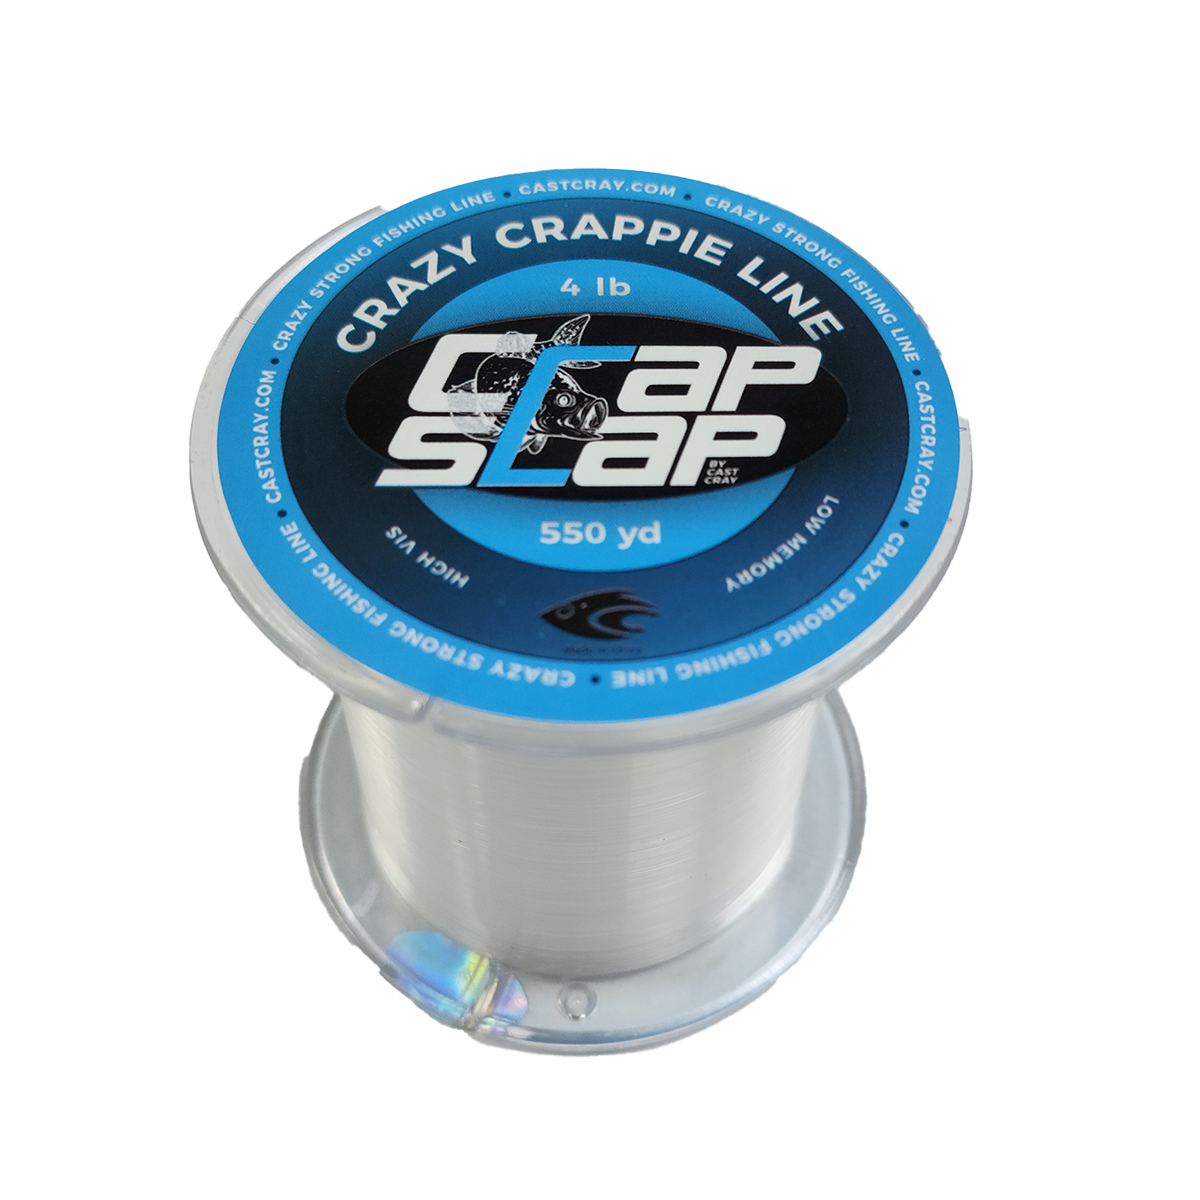 Crap Slap - Crazy Crappie Line - Clear 4lb - Cast Cray Outdoors